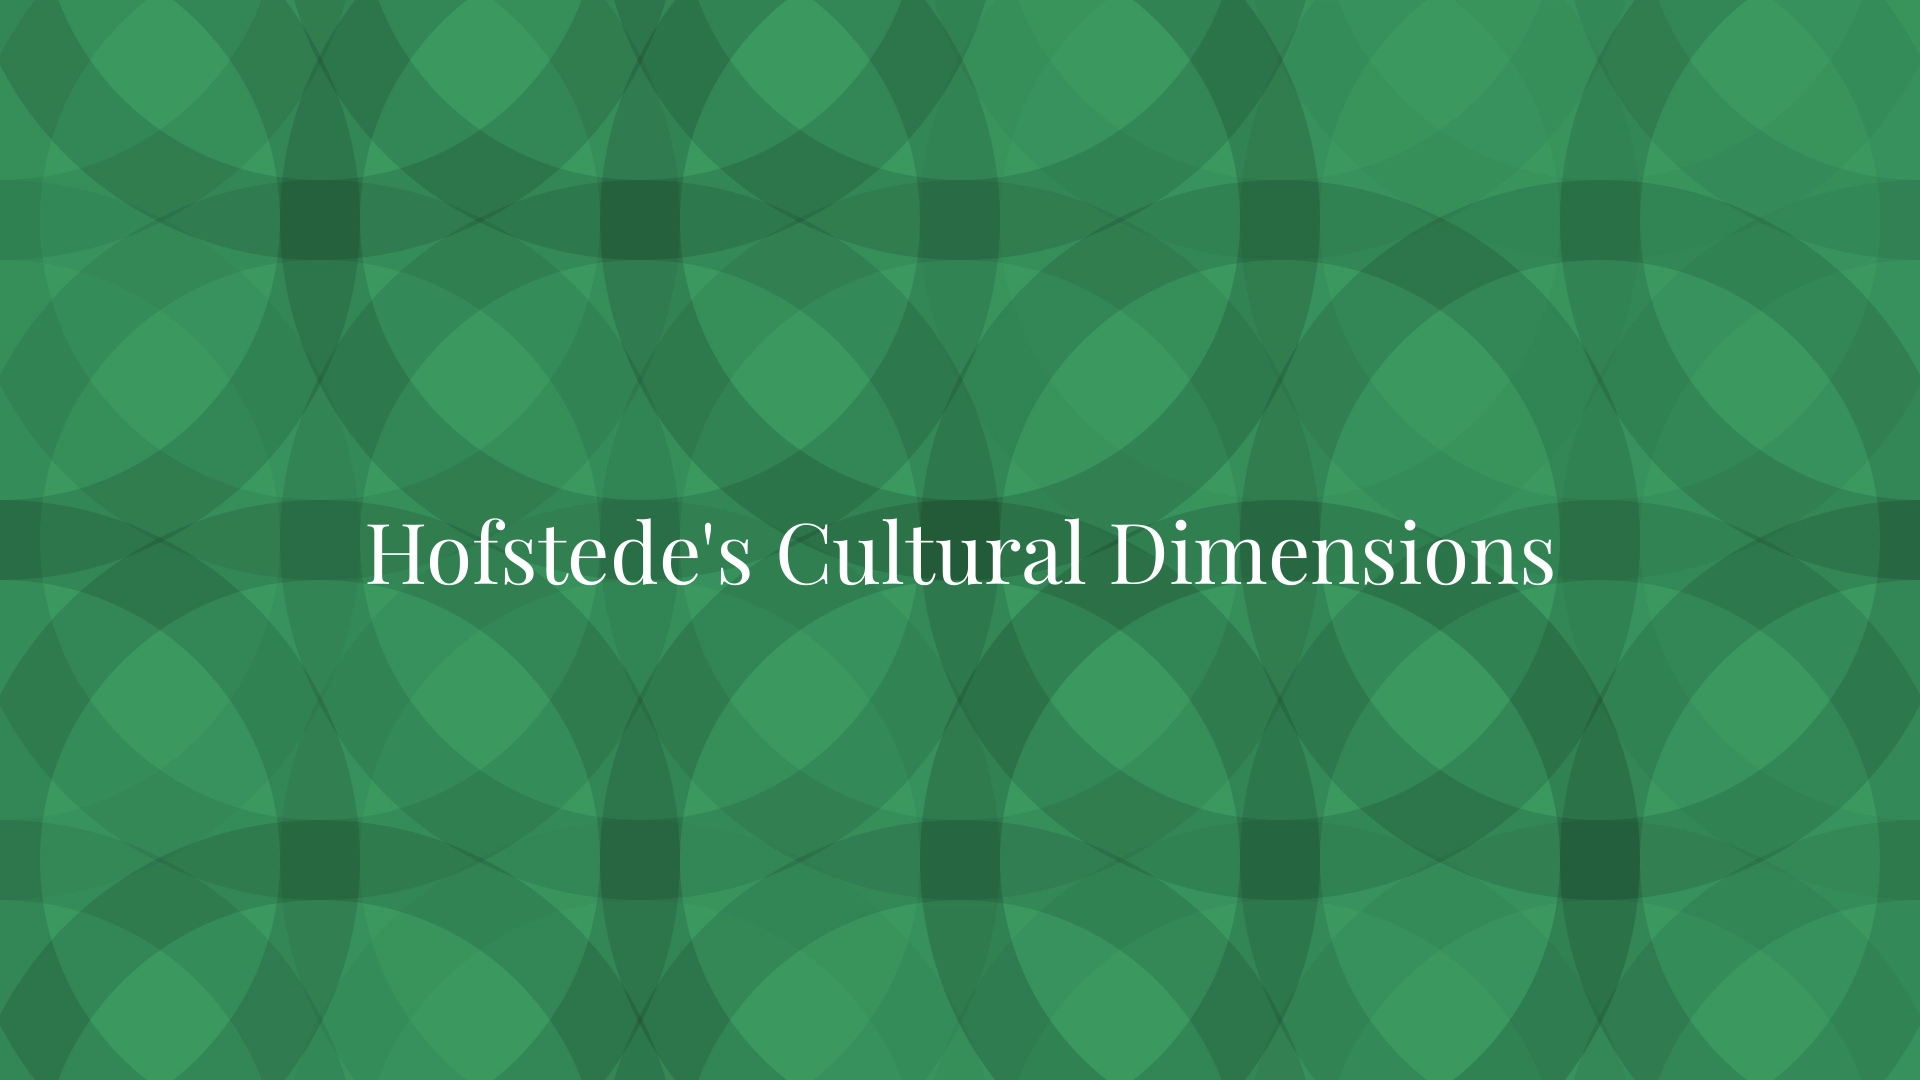 Las dimensiones culturales de Hofstede